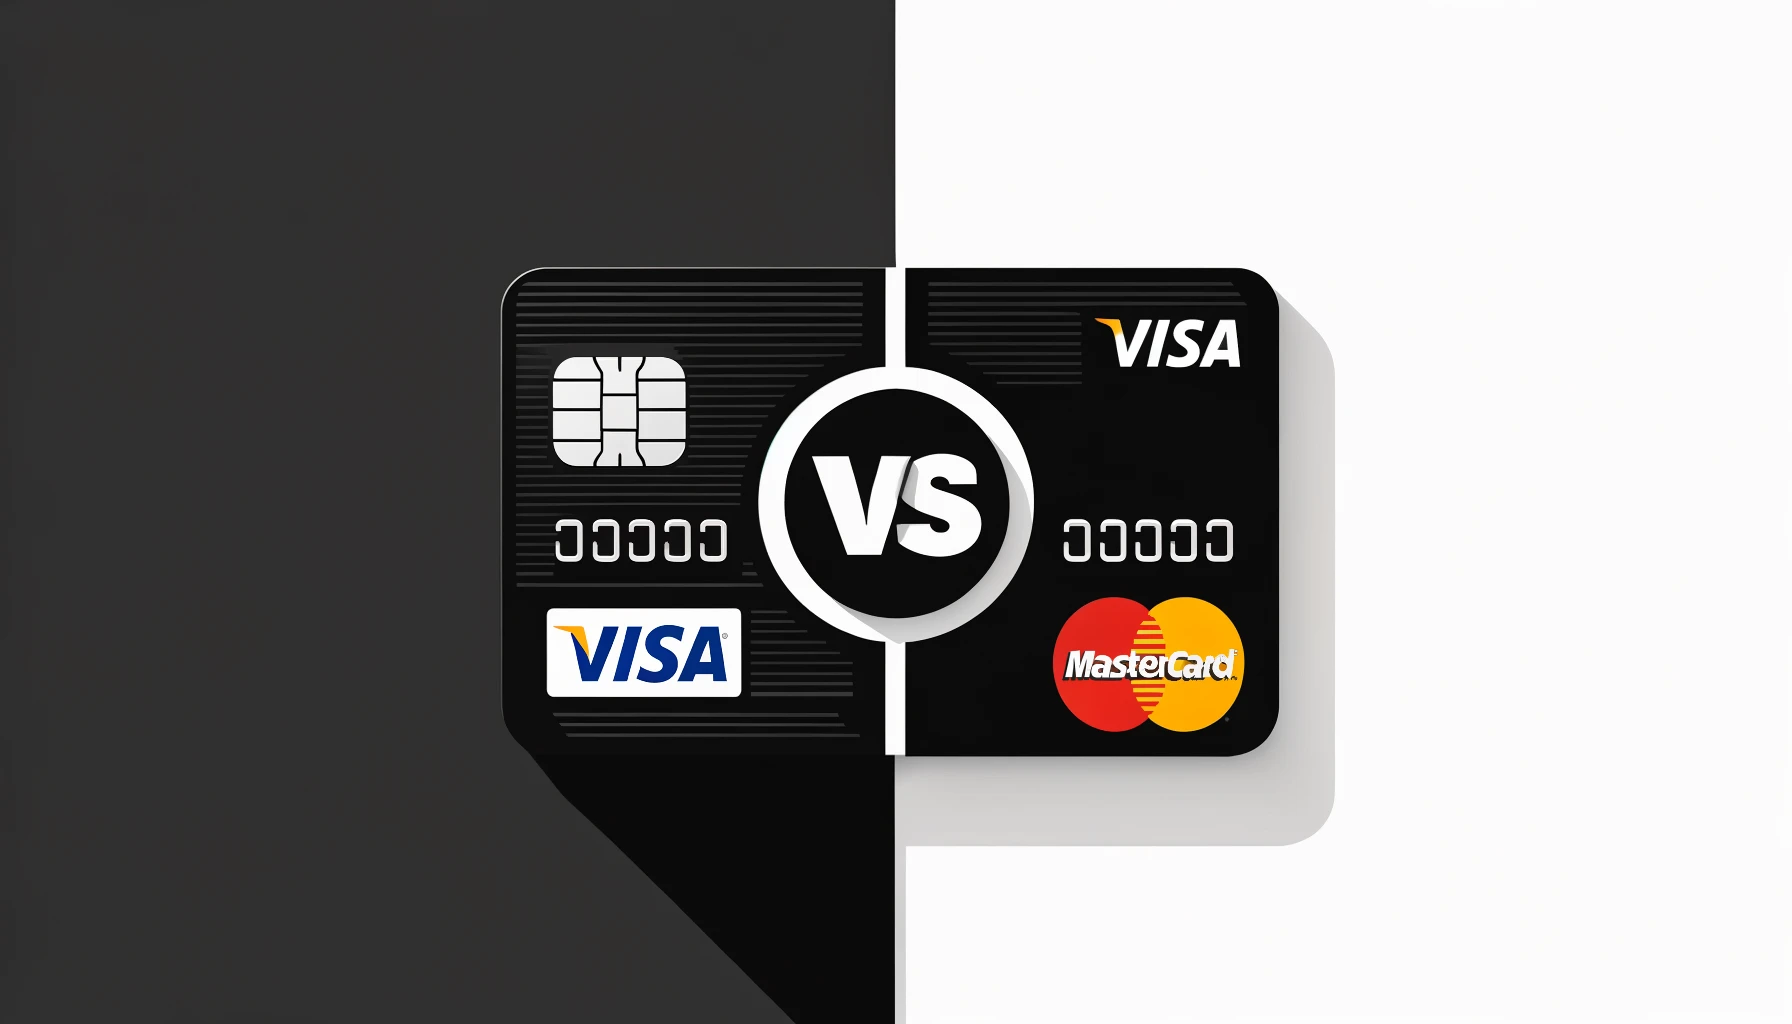 Comparação entre cartões Visa e Mastercard.